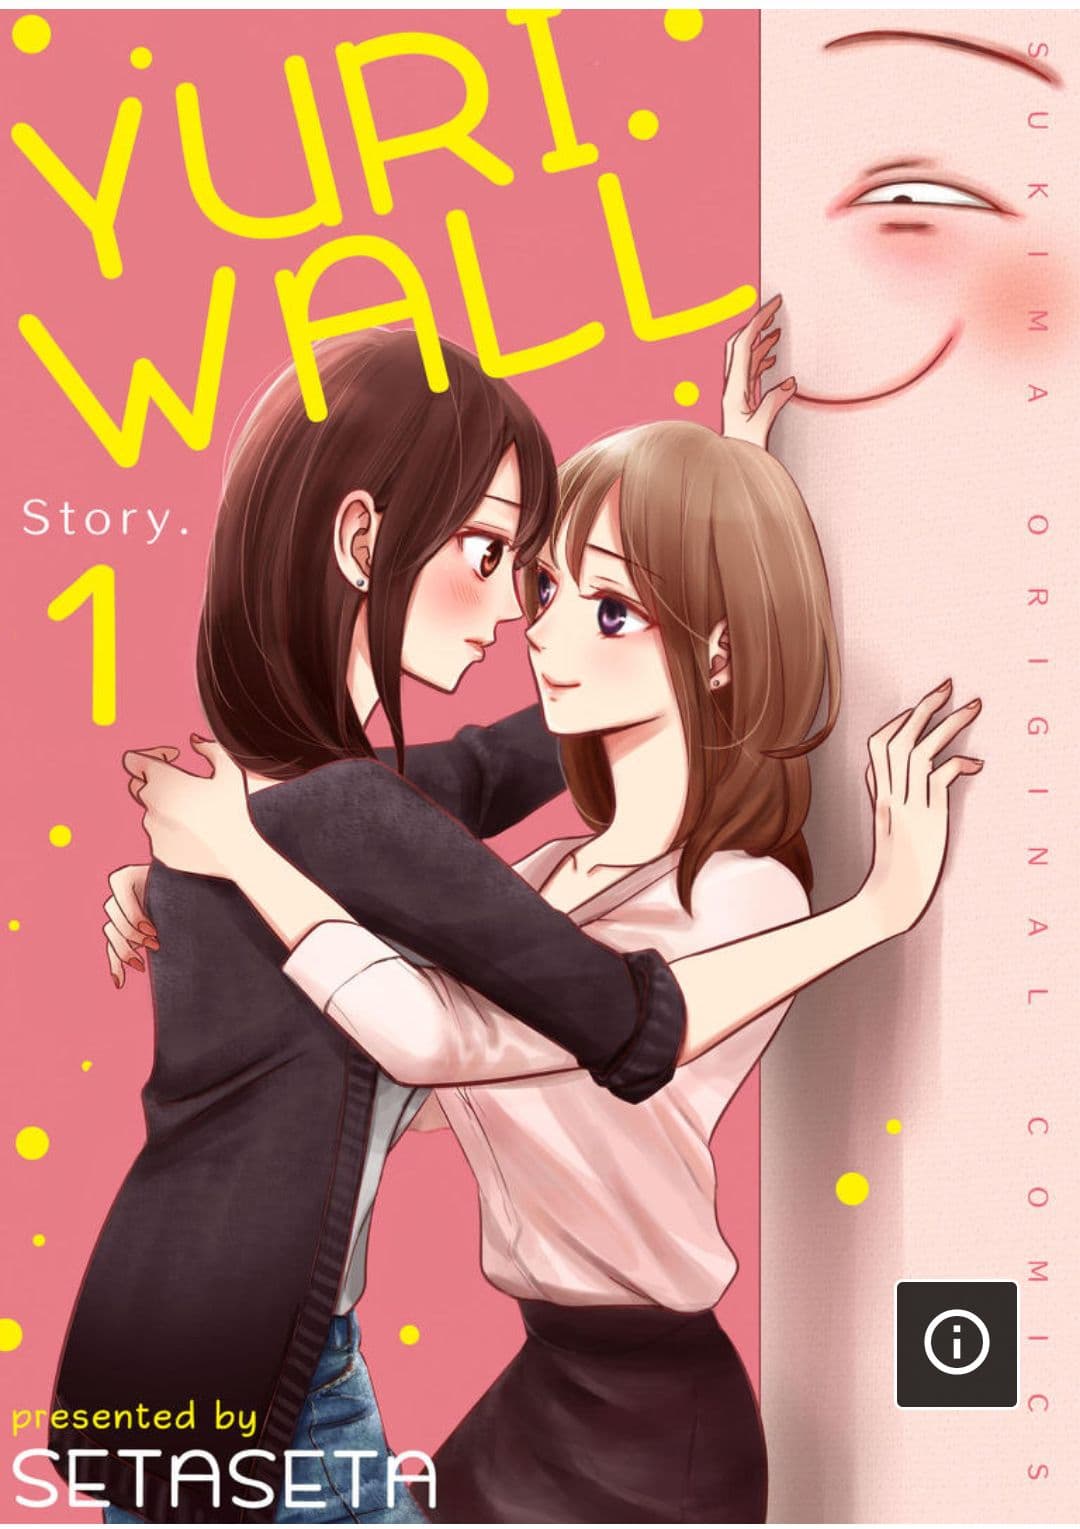 Yuri Wall 1 (1)